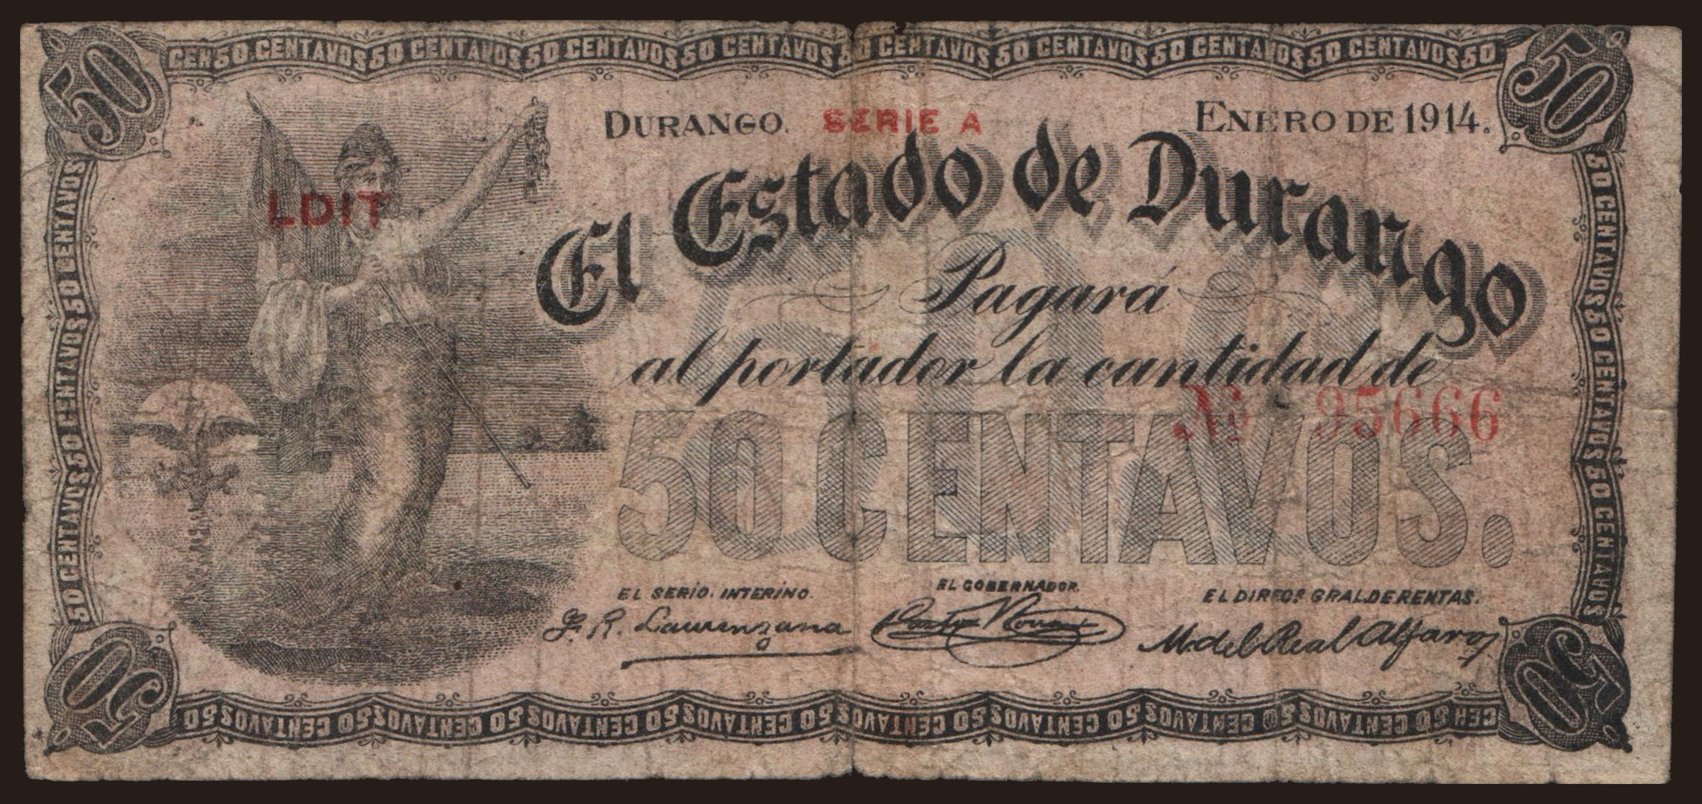 El Estado de Durango, 50 centavos, 1914